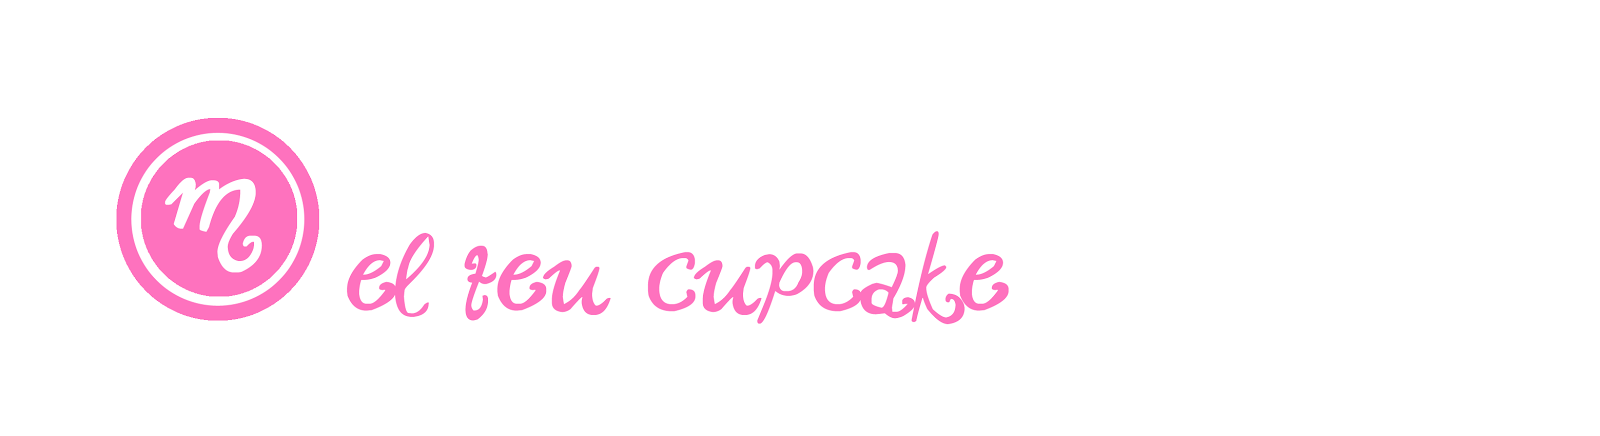 El teu cupcake